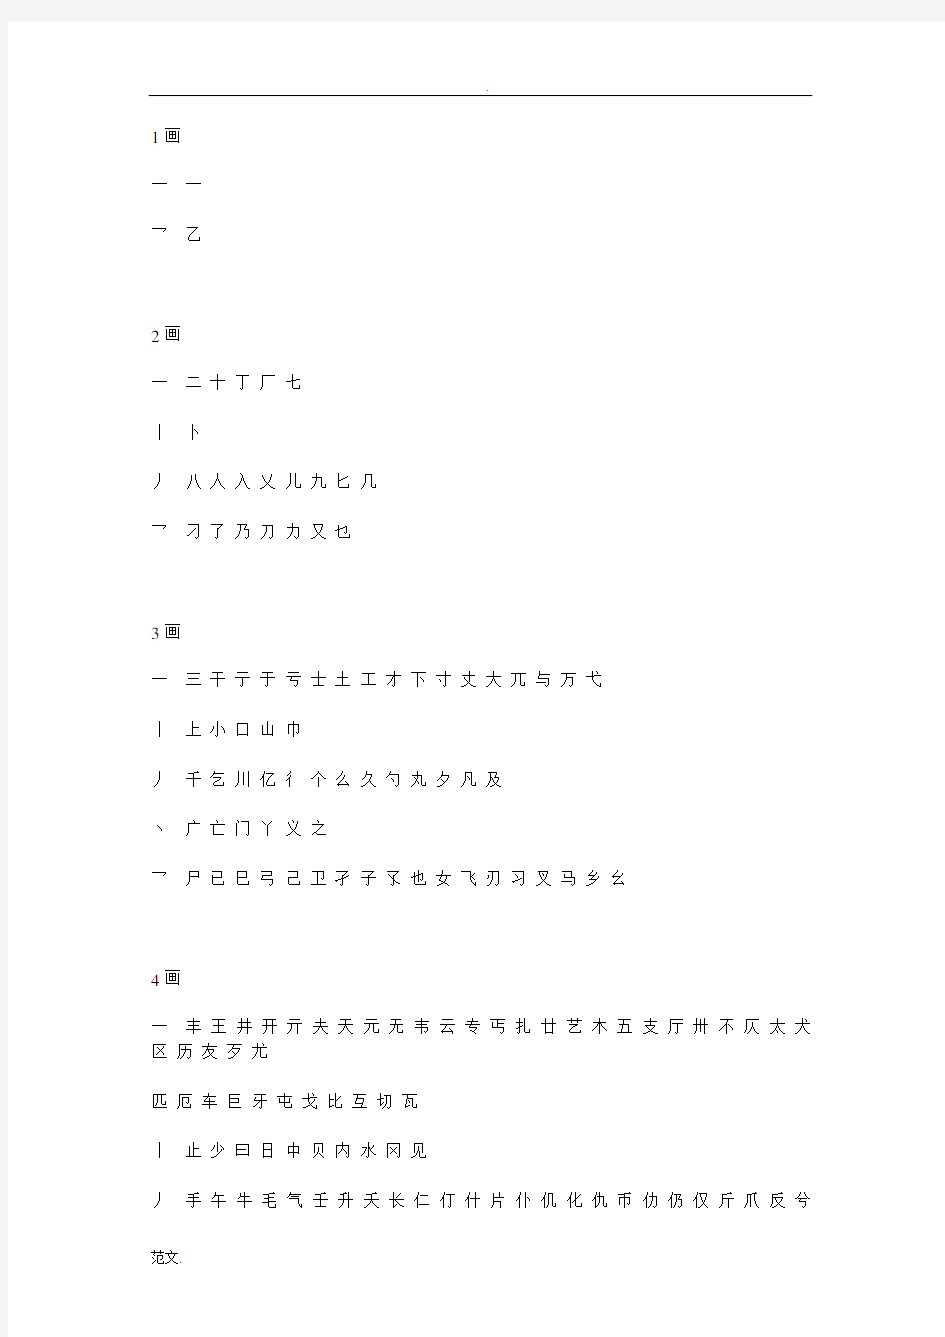 现代汉语通用字表7000个汉字